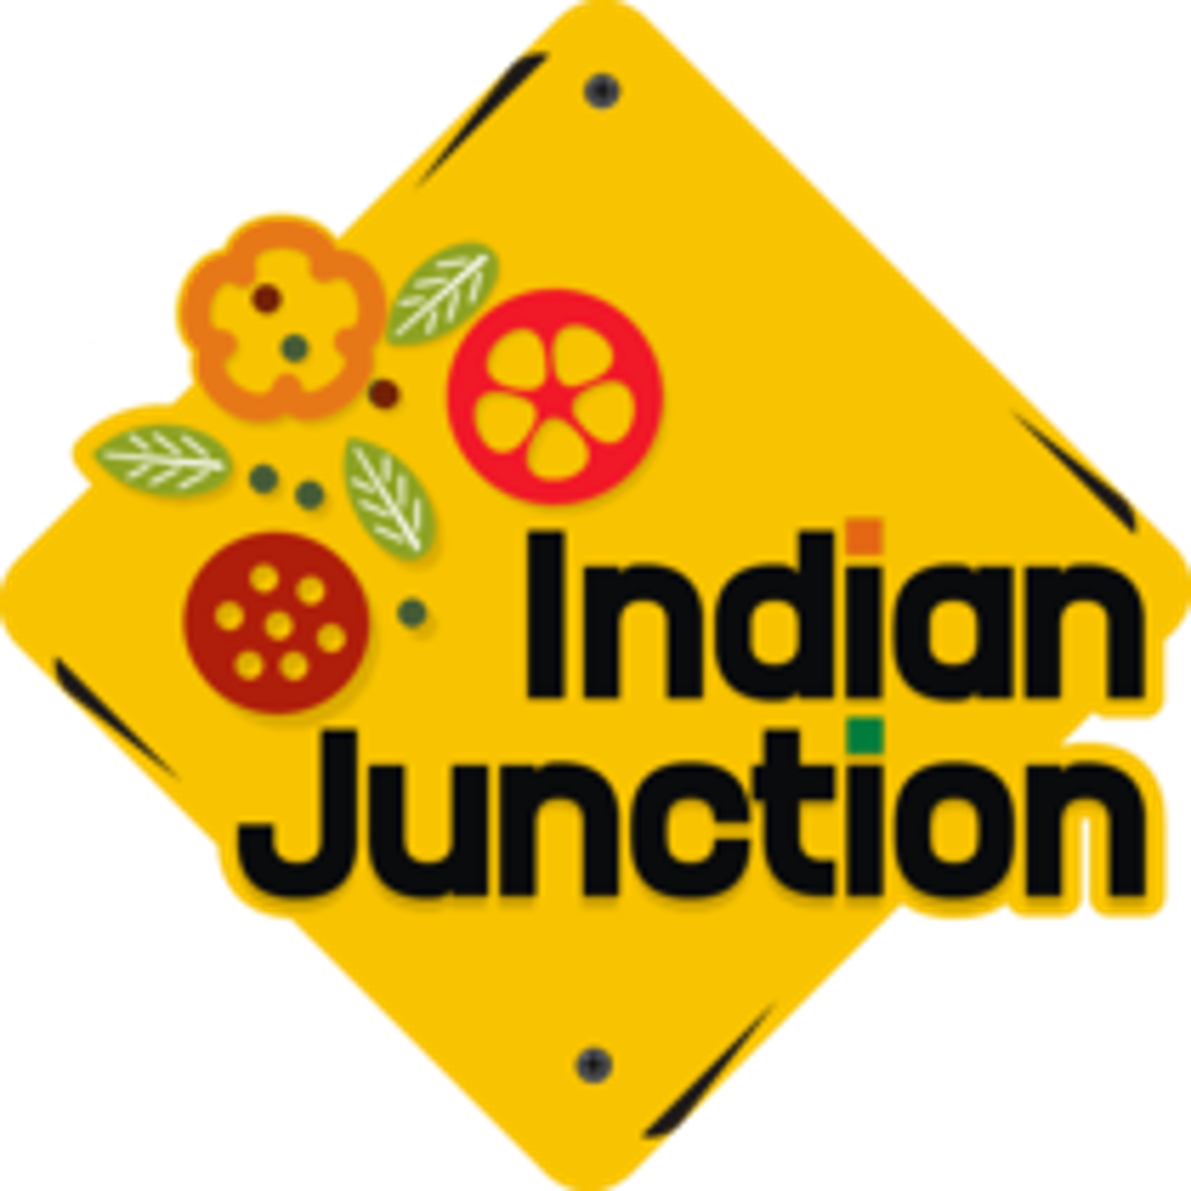 Indian Junction Logo